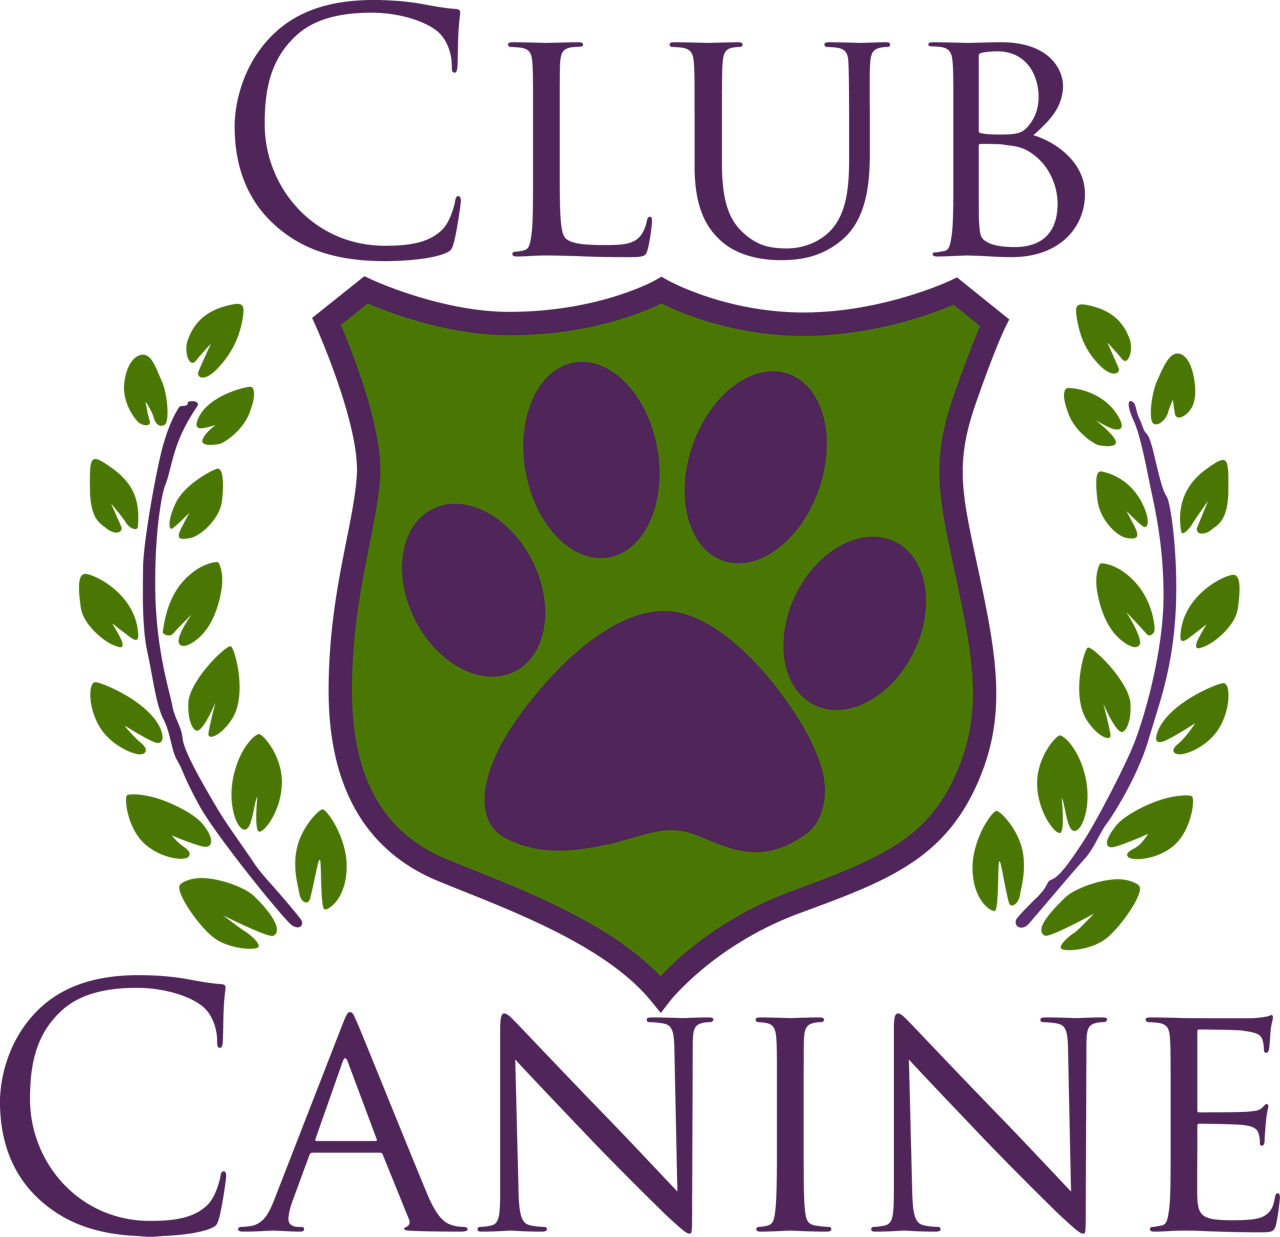 Club canine logo